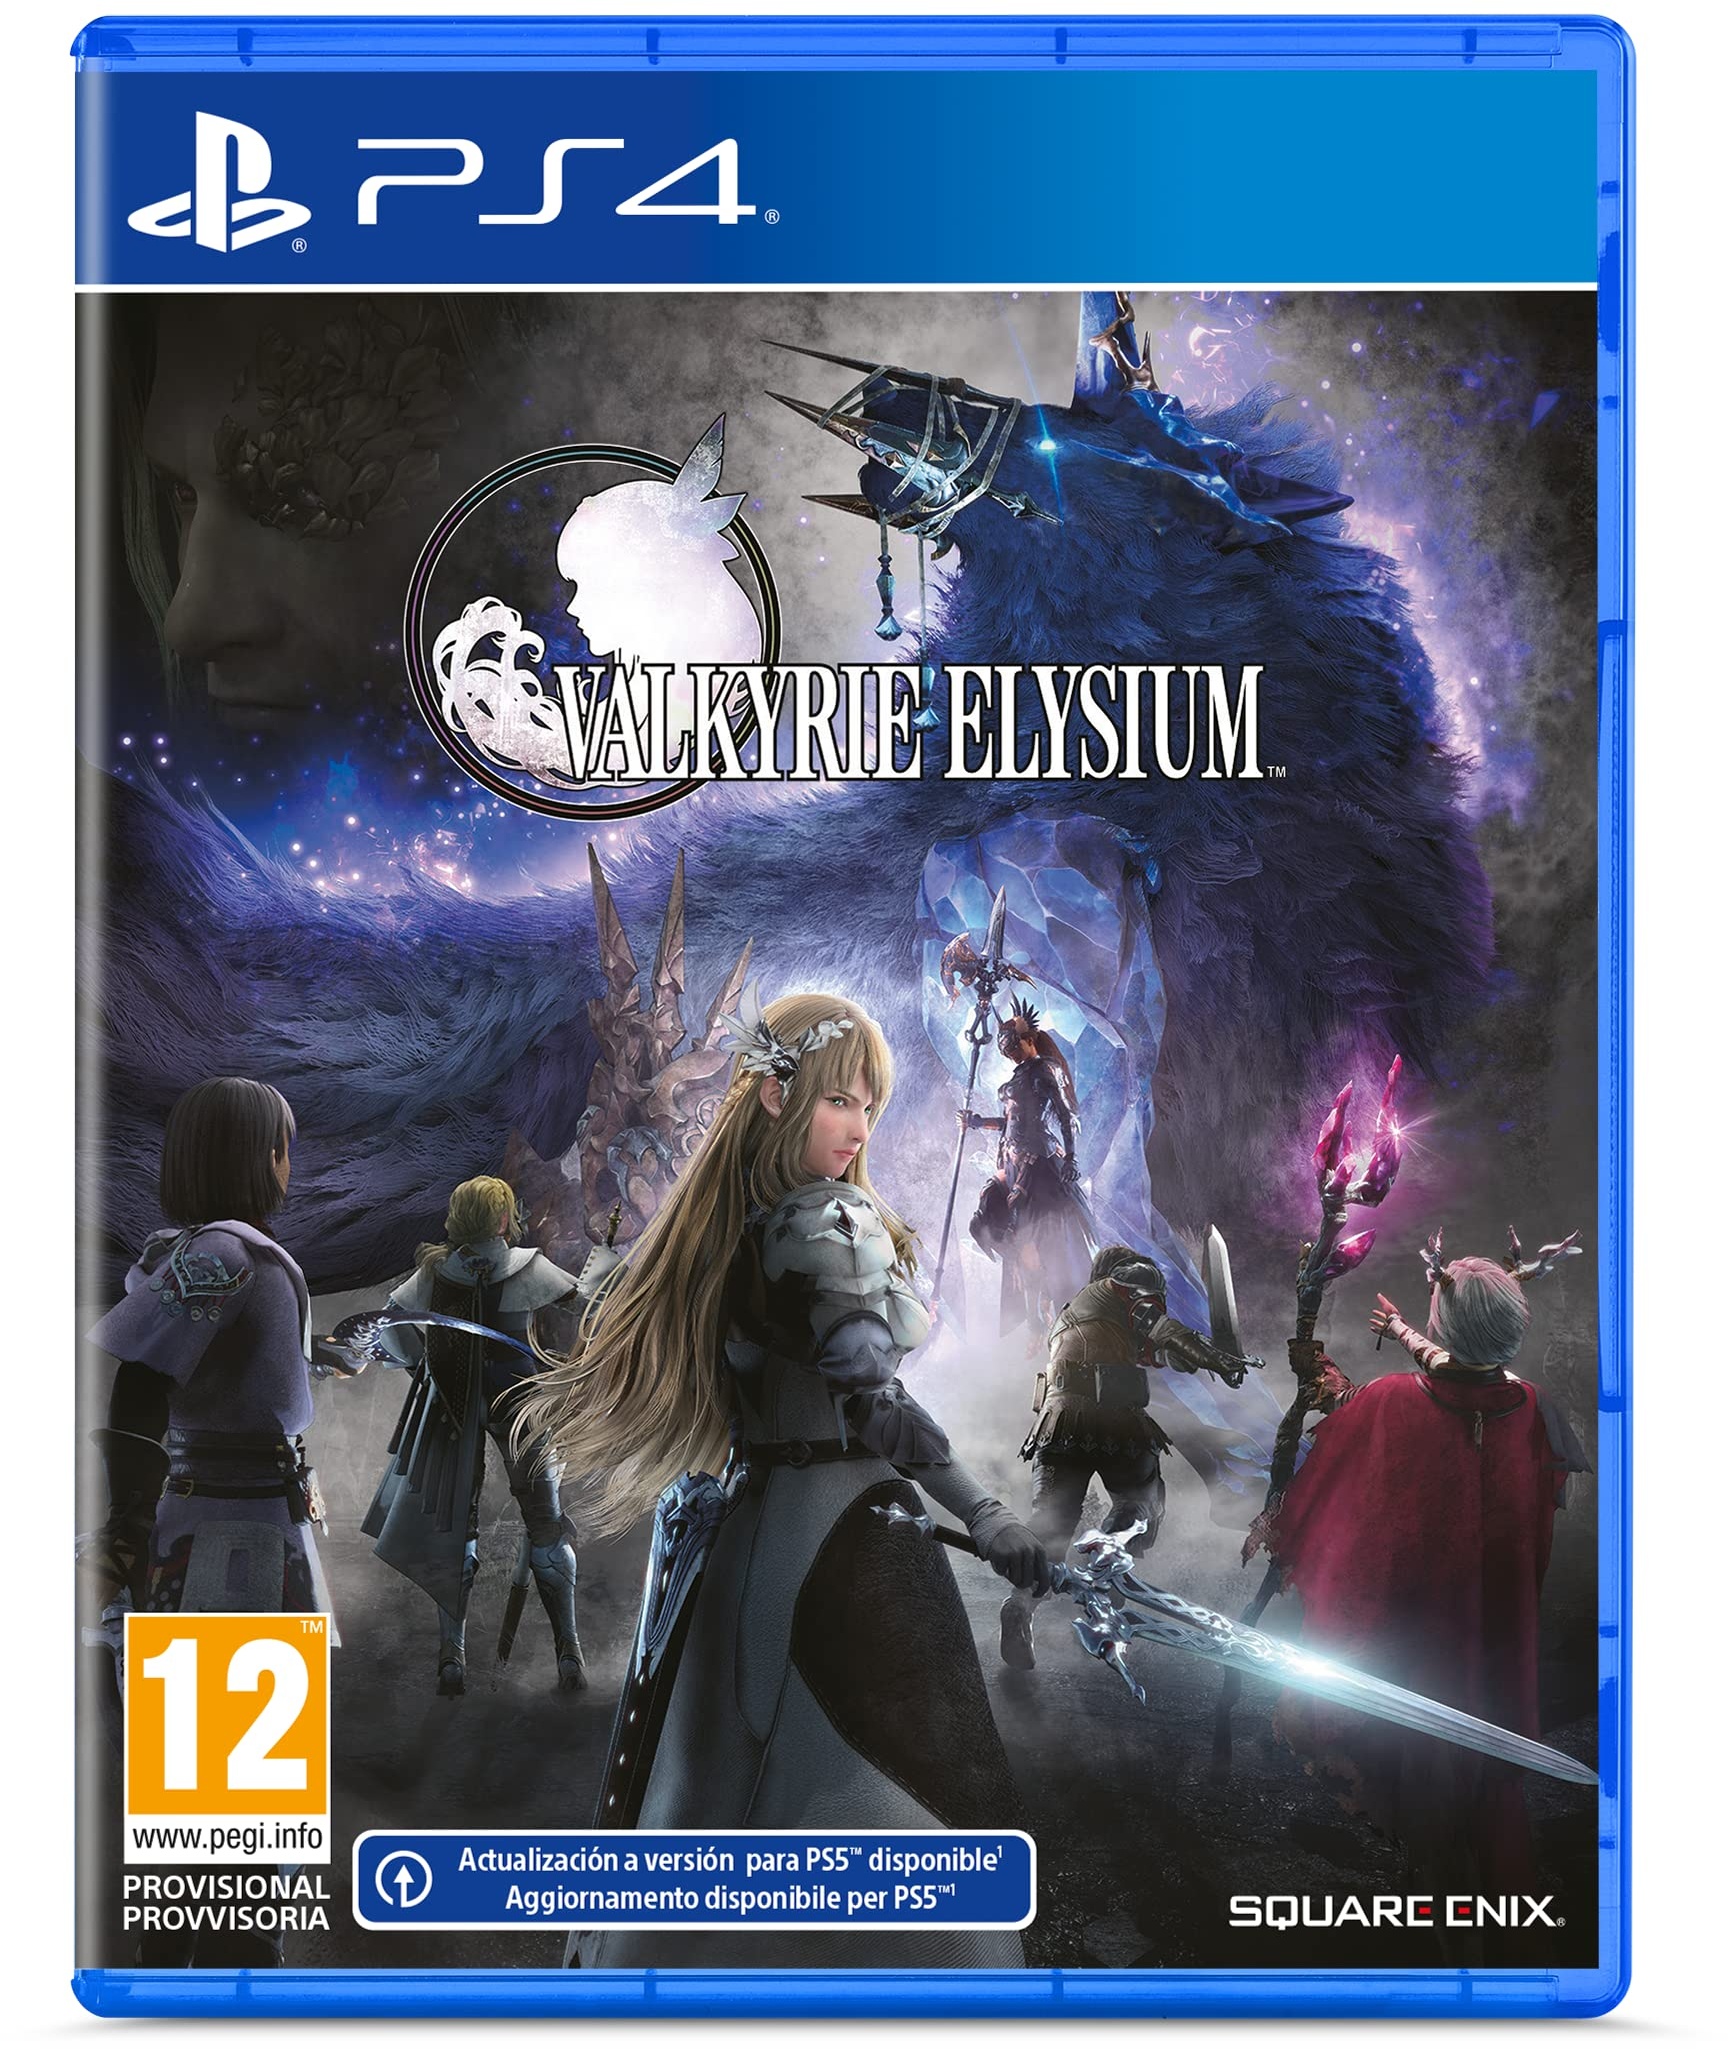 Valkyrie Elysium für PS4 (Deutsche Verpackung)